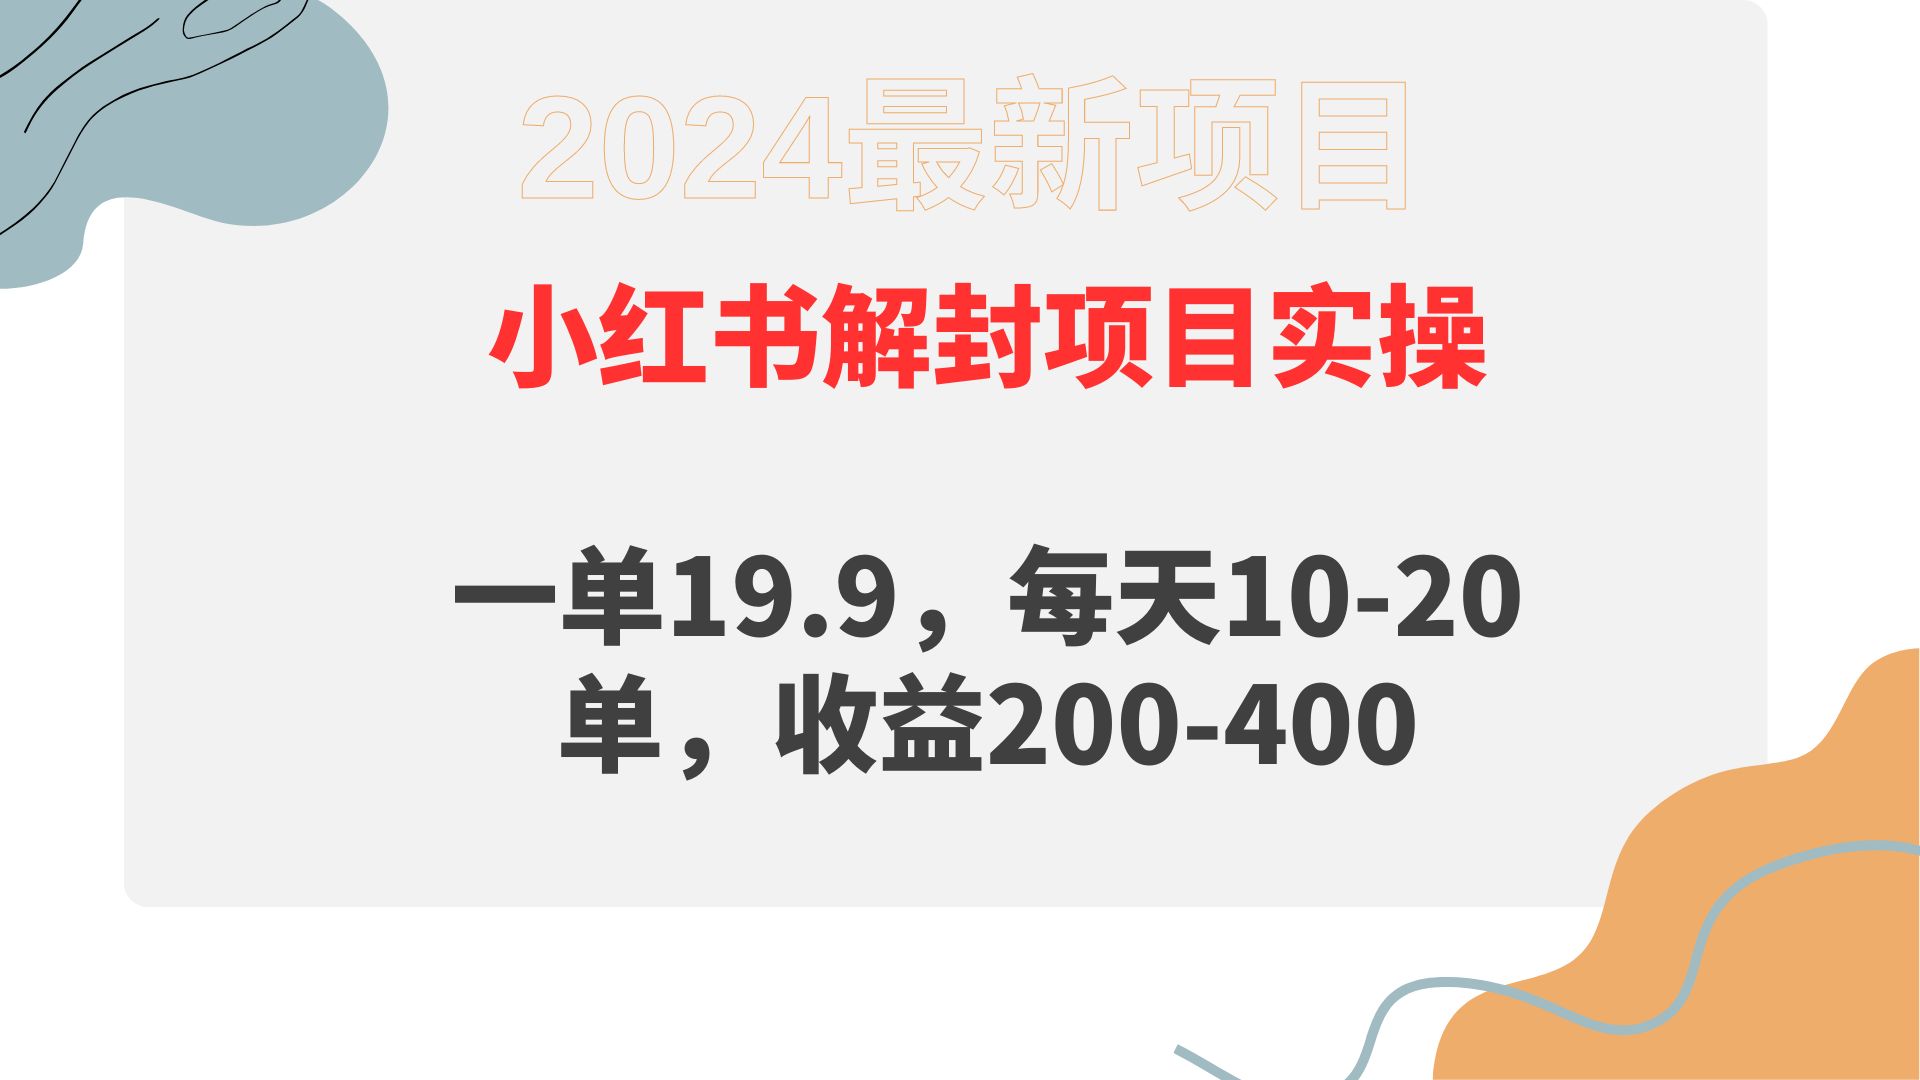 （9583期）小红书解封项目：一单19.9,每天10-20单,收益200-400